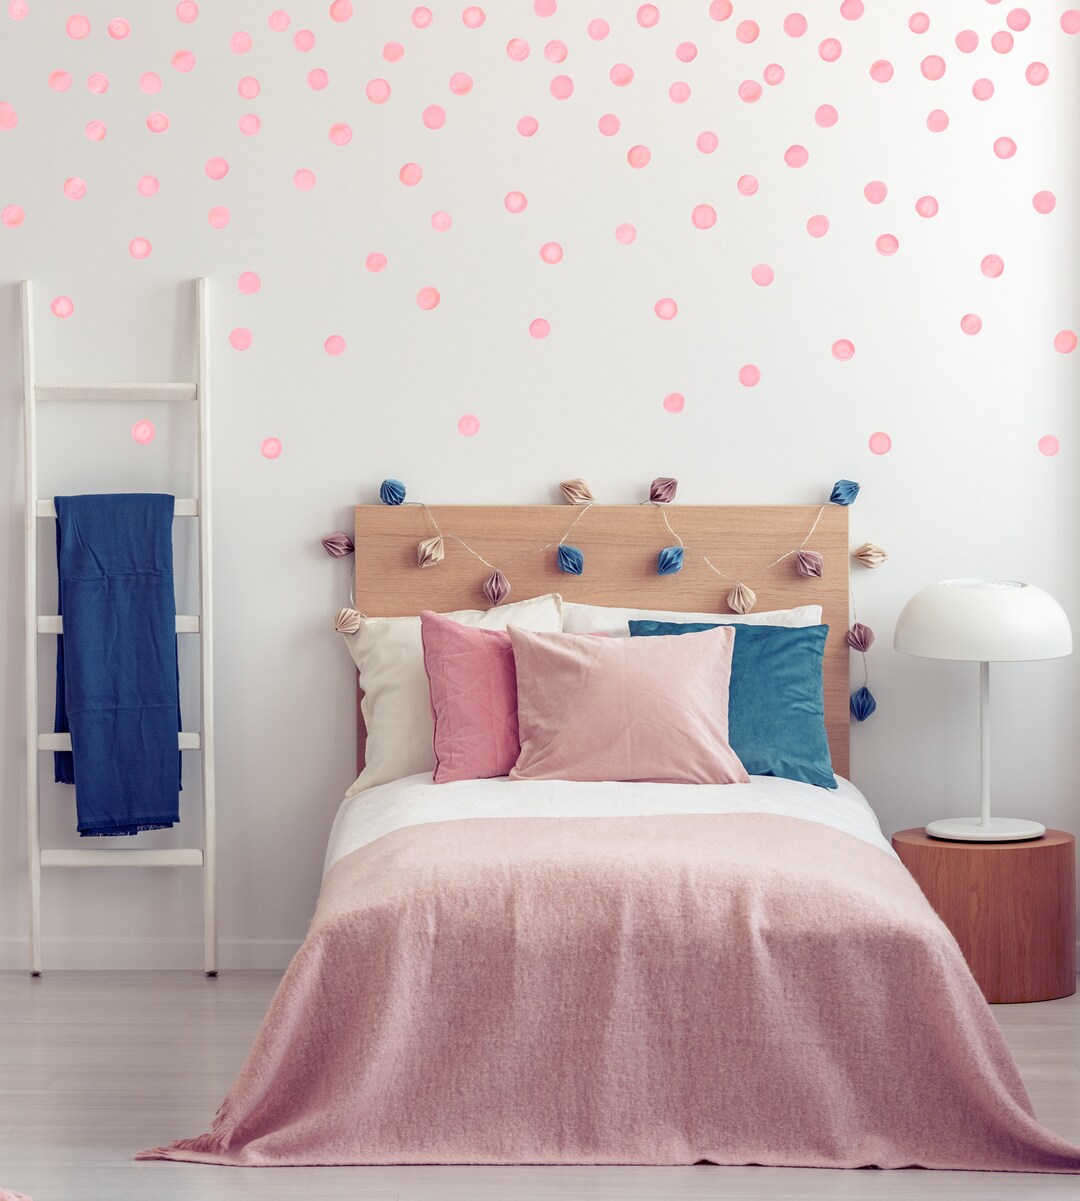 Confetti Sparkles Fabric, Wallpaper and Home Decor